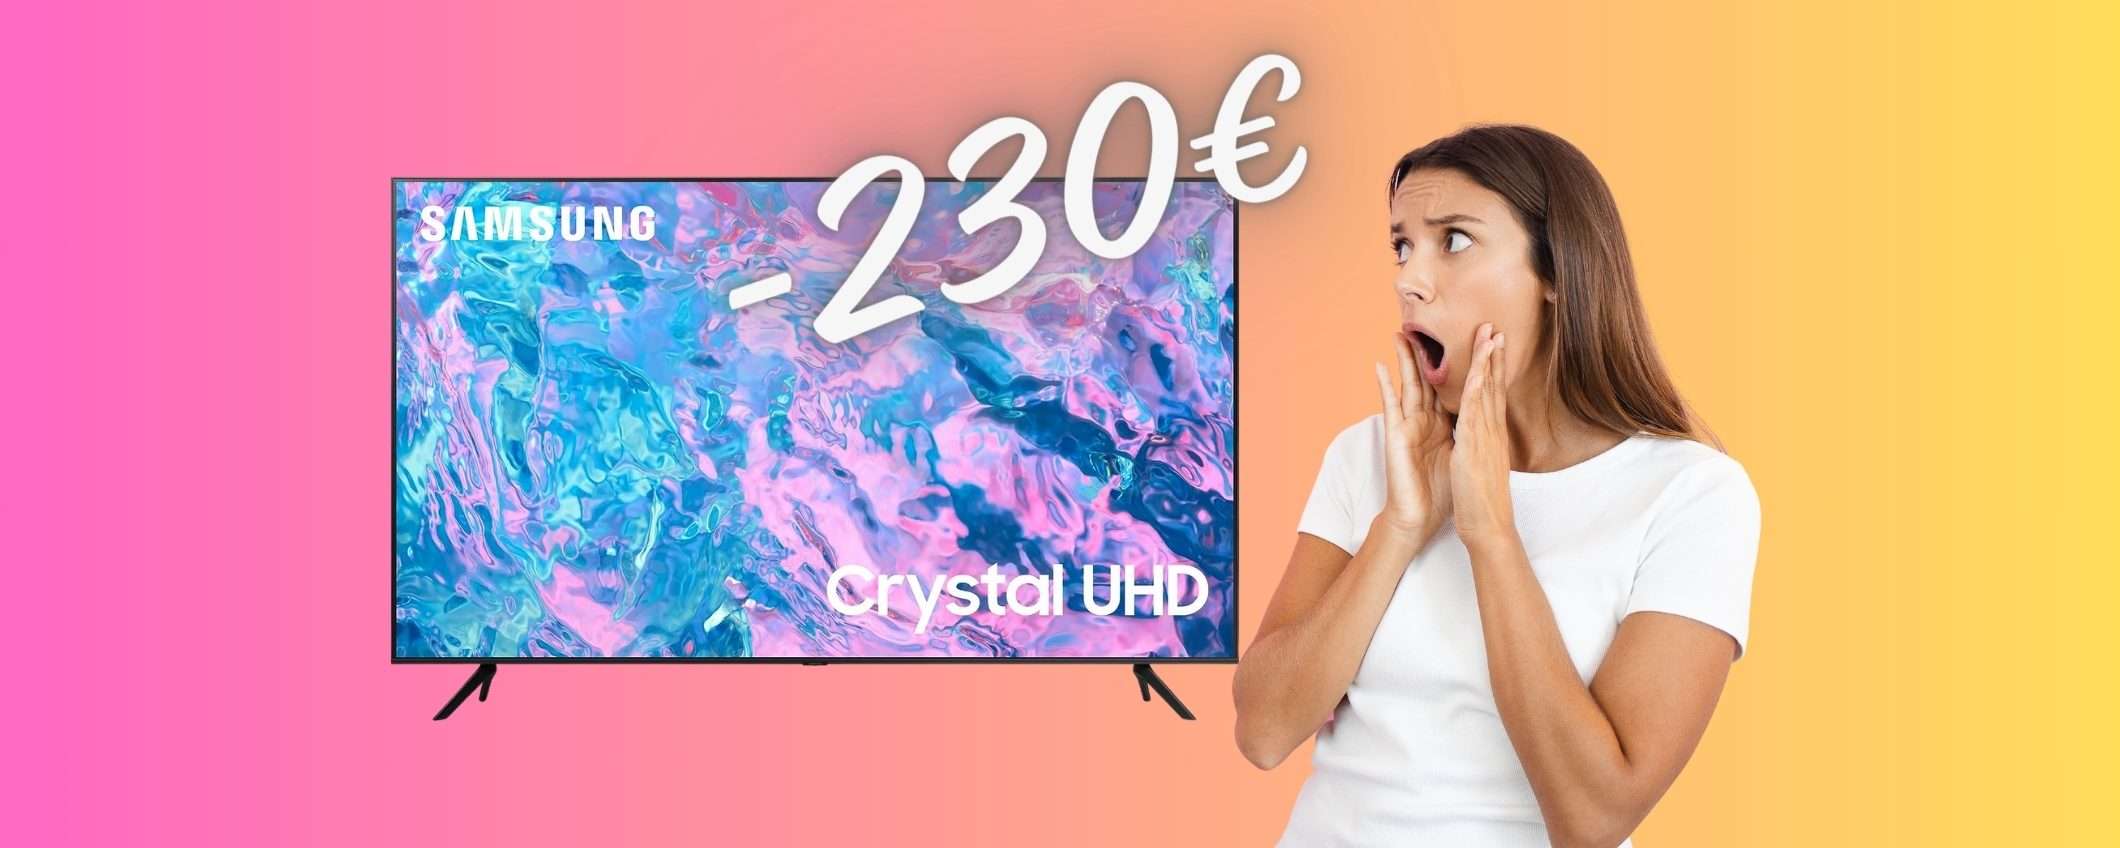 Samsung Crystal UHD: Smart TV da 55 pollici che vogliono tutti al 33%